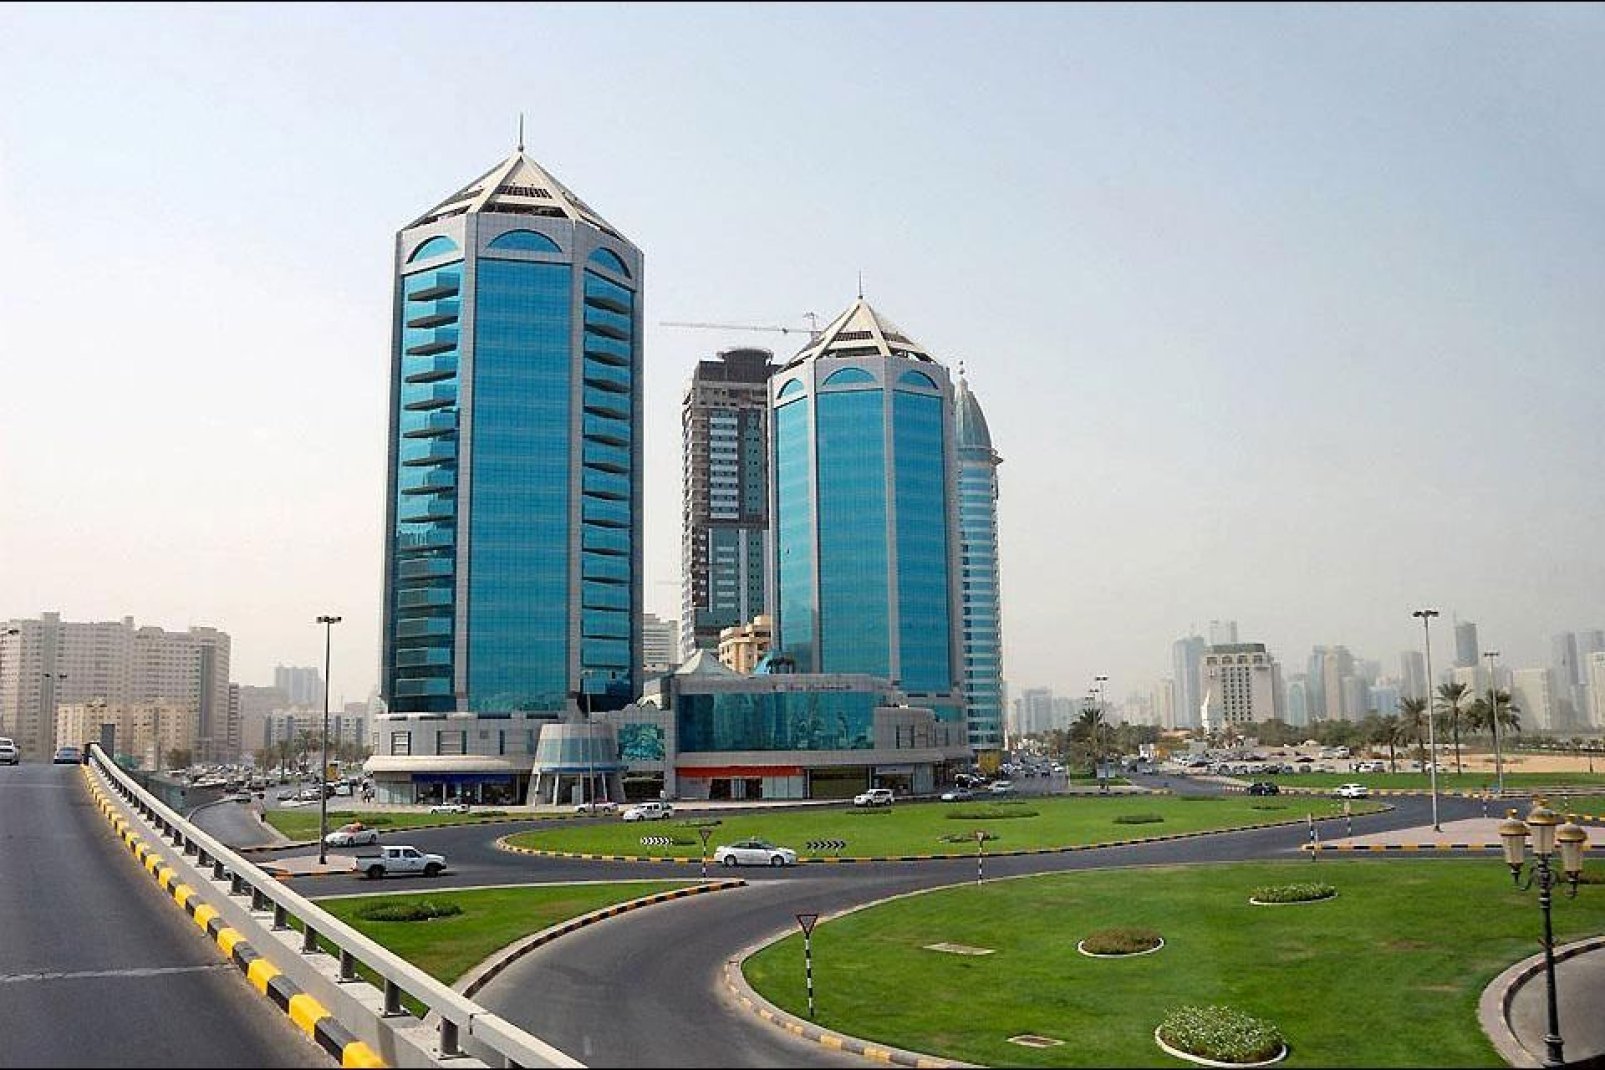 Galerías comerciales, centros de bienestar, gimnasios, residencias de lujo... Los complejos como el Crystal Palace son algo frecuente en los emiratos.